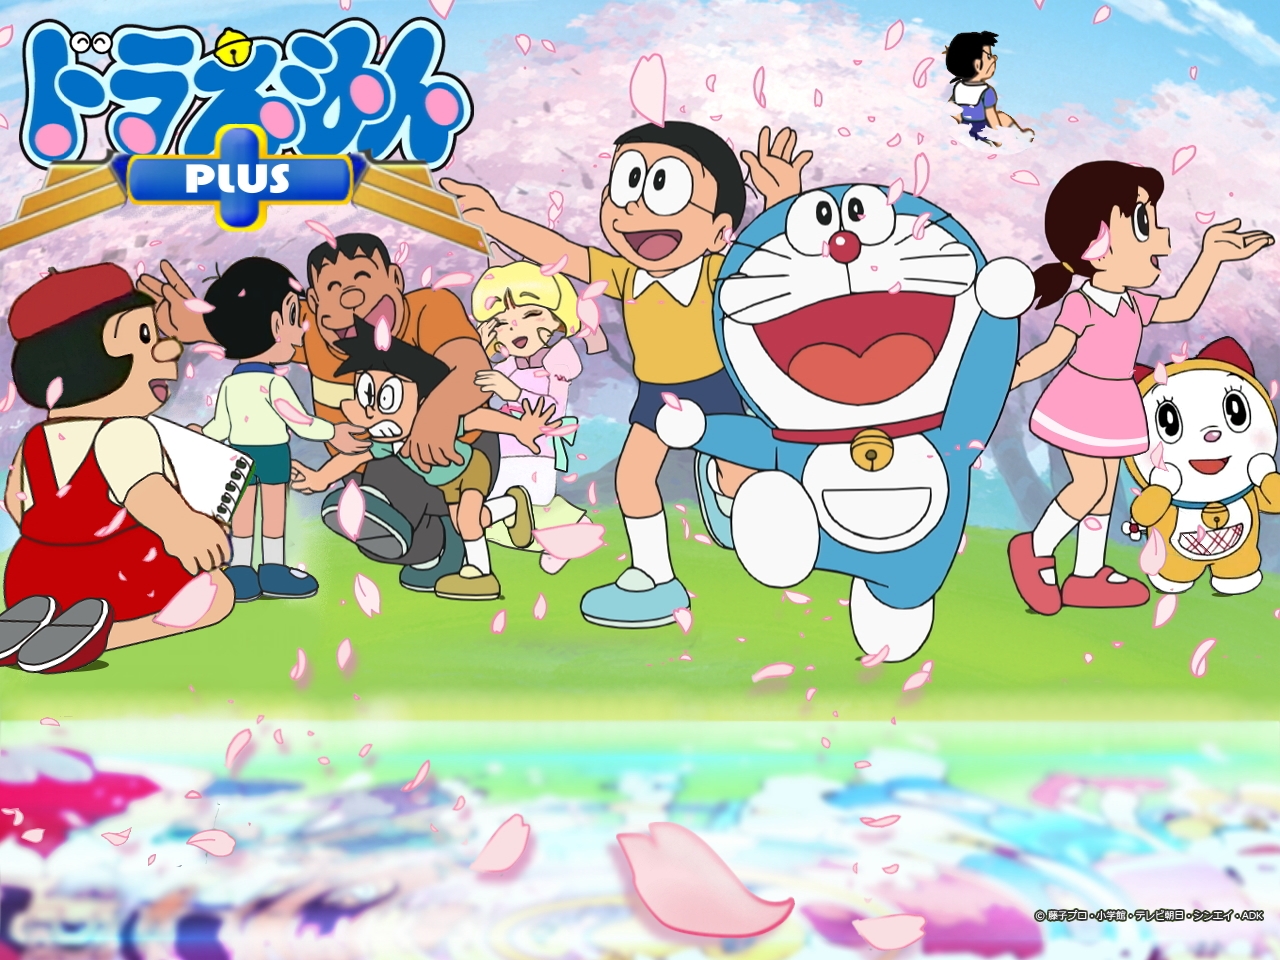 Anime Doraemon Wallpaper là một thế giới đầy màu sắc và phong phú, nơi bạn có thể chiêm ngưỡng những hình ảnh đầy tính nghệ thuật của chú mèo máy Doremon và bạn bè. Bộ sưu tập Anime Doraemon Wallpaper sẽ khiến cho bạn đắm chìm trong thế giới đầy ảo diệu và thú vị này.